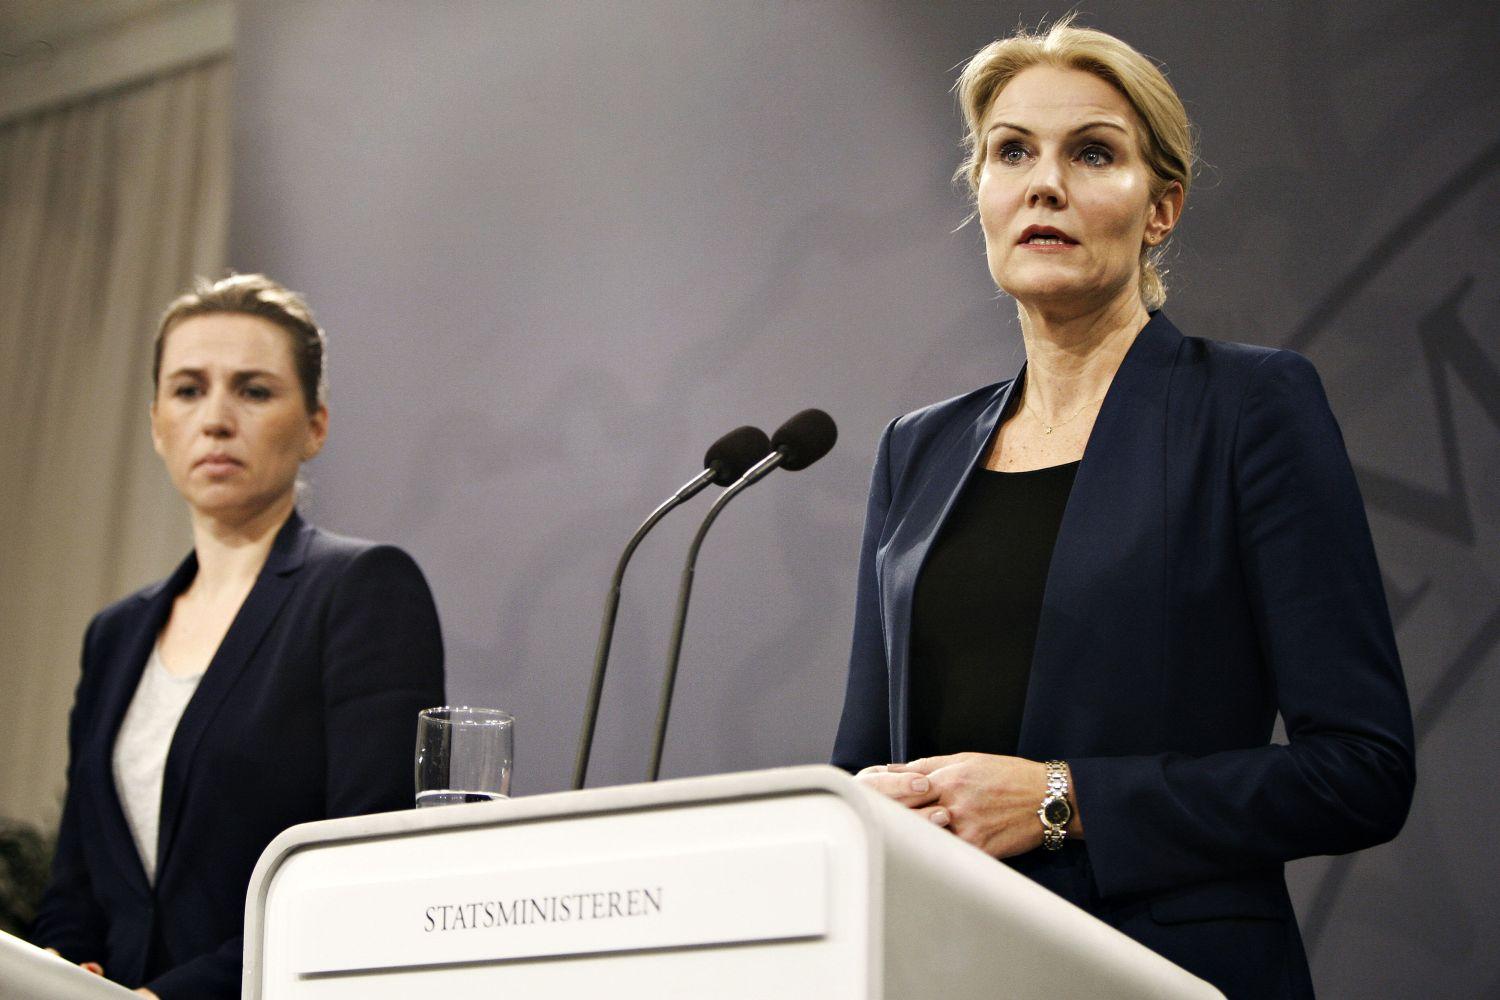 Mette Frederiksen igazságügyi miniszter (balra) Thorning-Schmidttel az oldalán egy vasárnapi miniszterelnöki sajtótájékoztatón